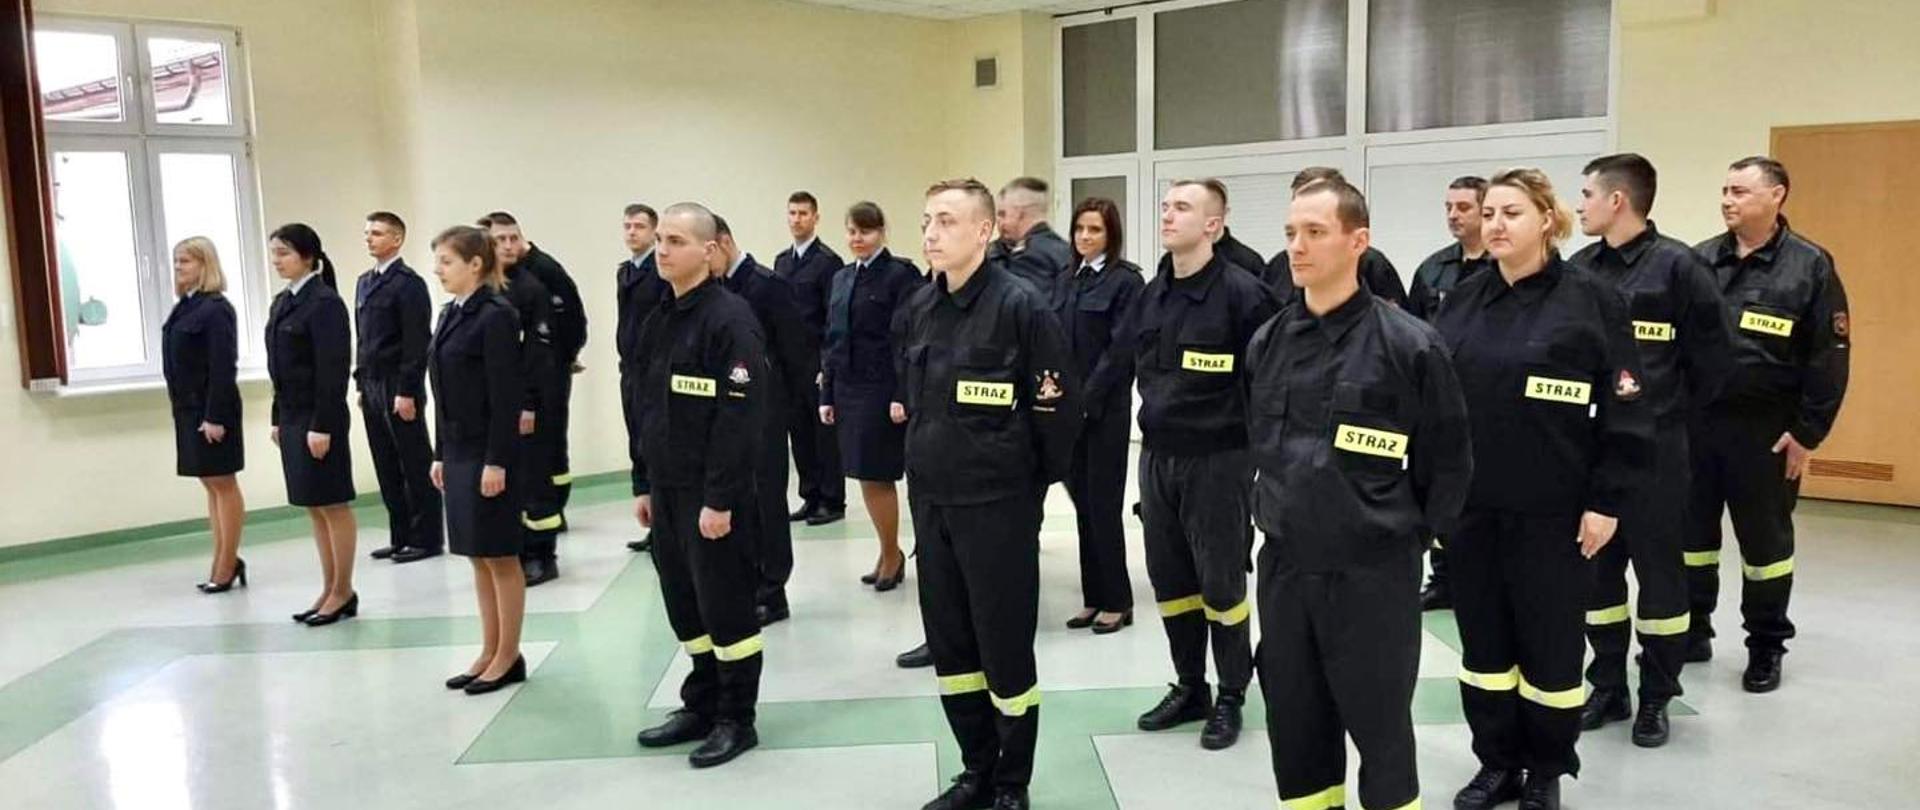 Na zdjęciu widoczni kursantki oraz kursanci szkolenia podstawowego w zawodzie strażak, w ubraniach koszarowych oraz służbowych.